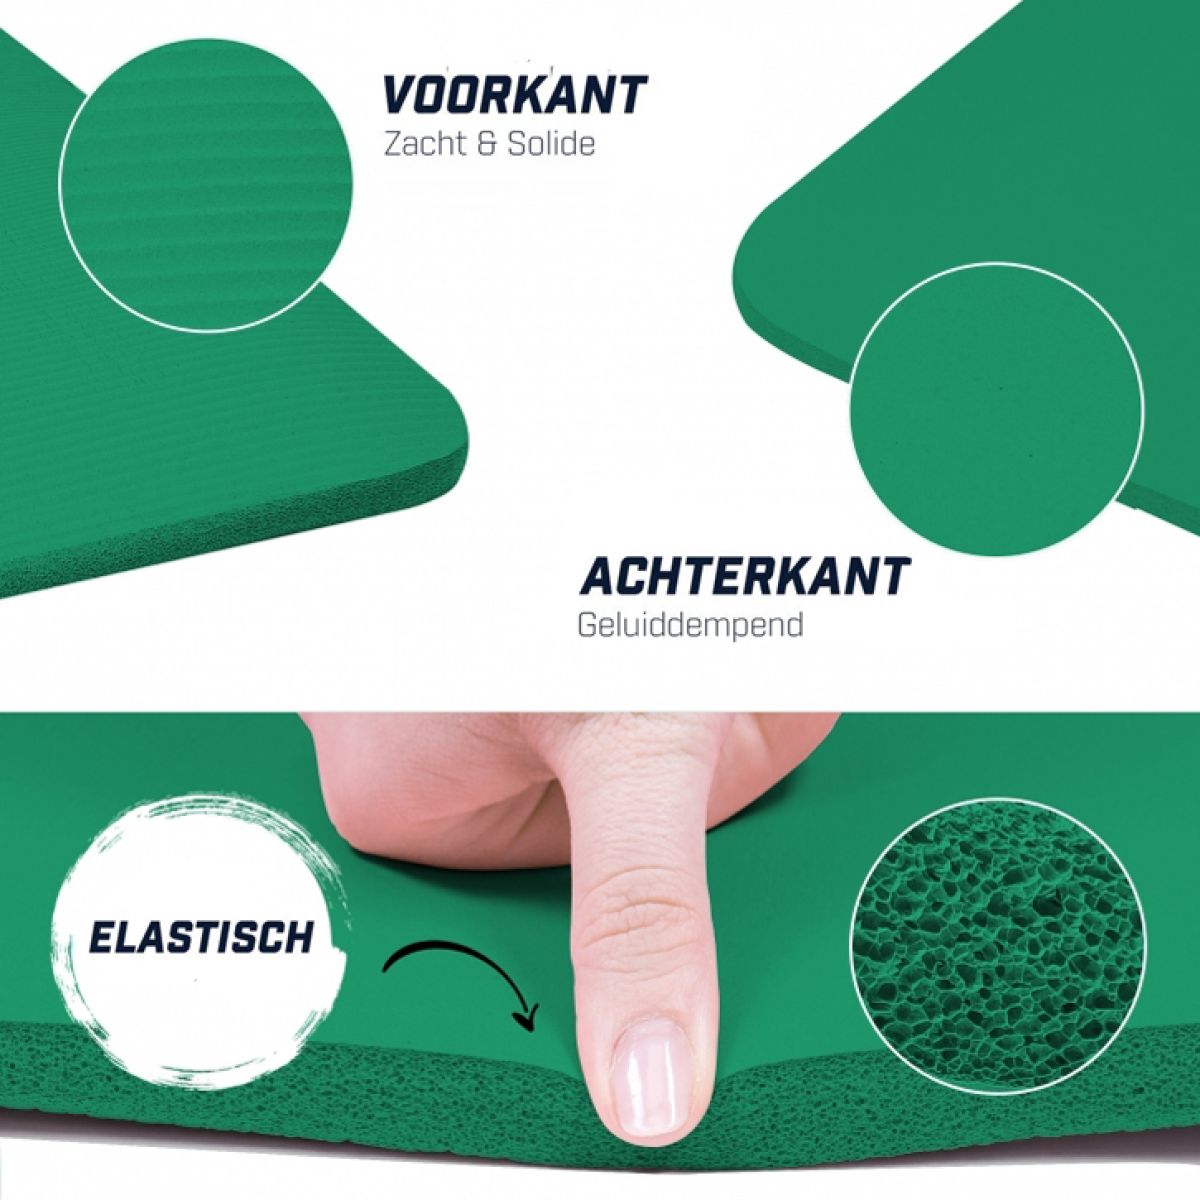 Groen - Yogamat Deluxe 190 x 60 x 1,5 cm